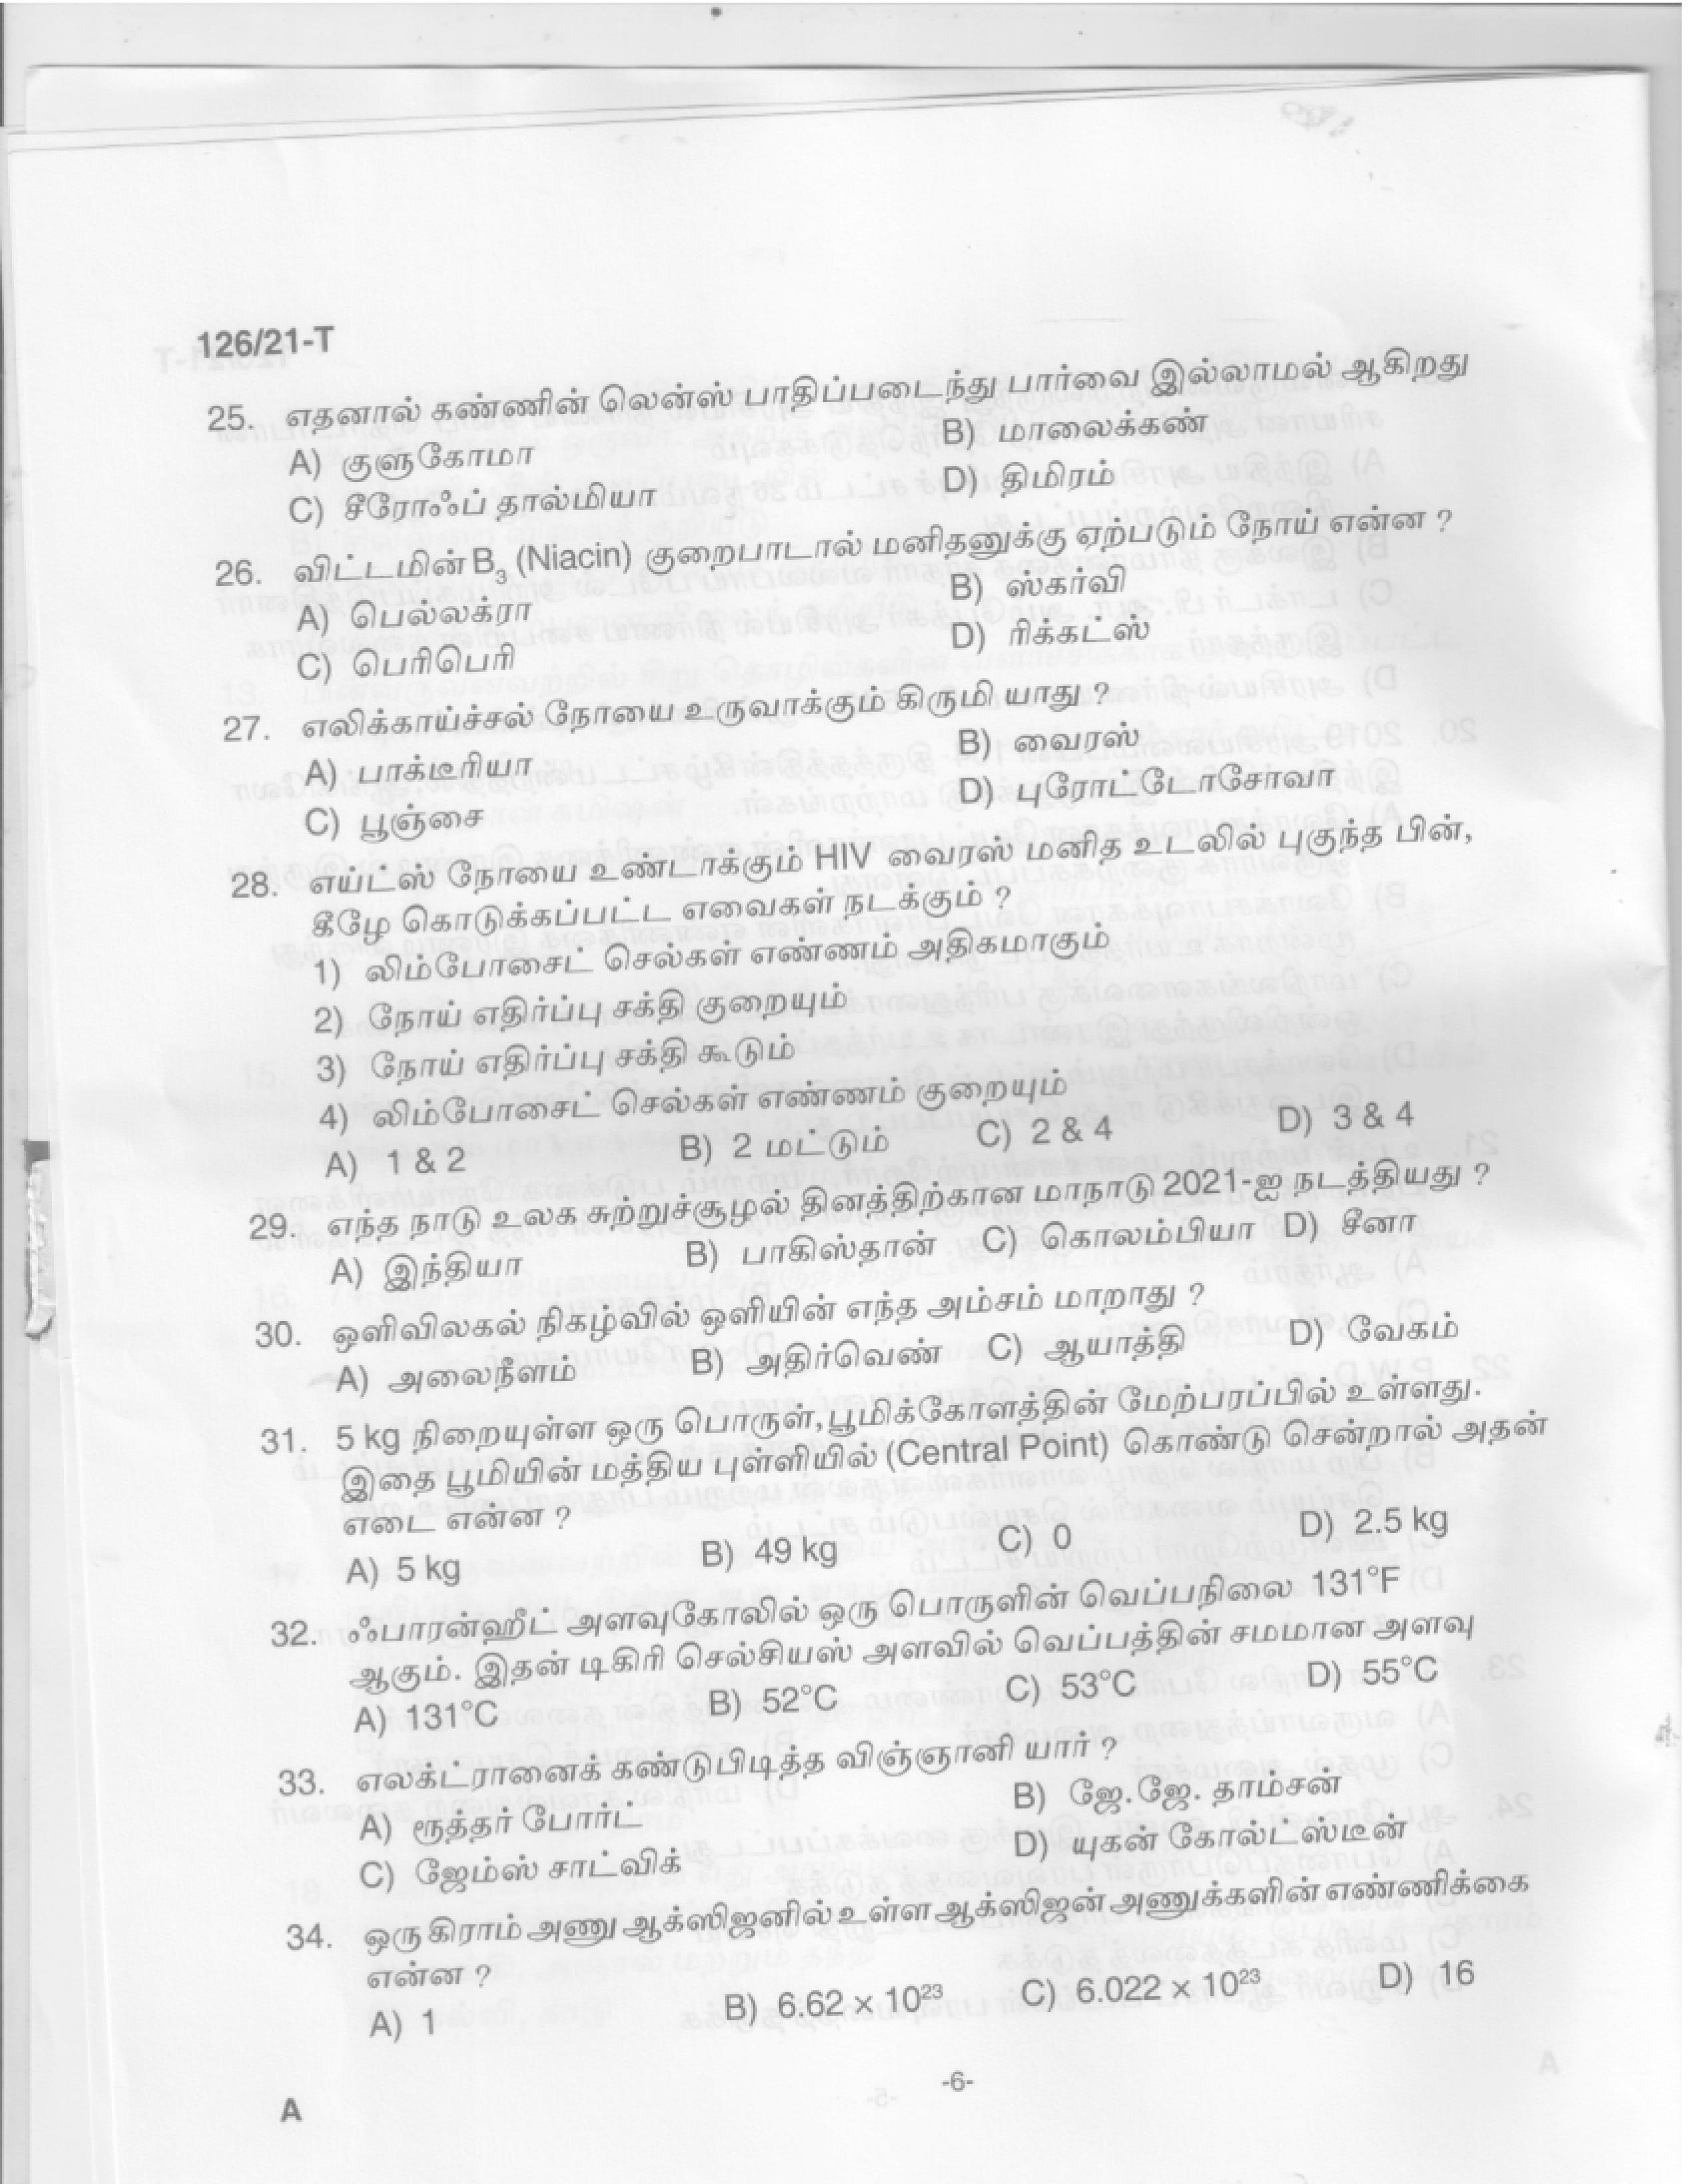 Upto SSLC Level Main Exam Assistant Compiler Tamil Exam 2021 Code 1262021 T 4